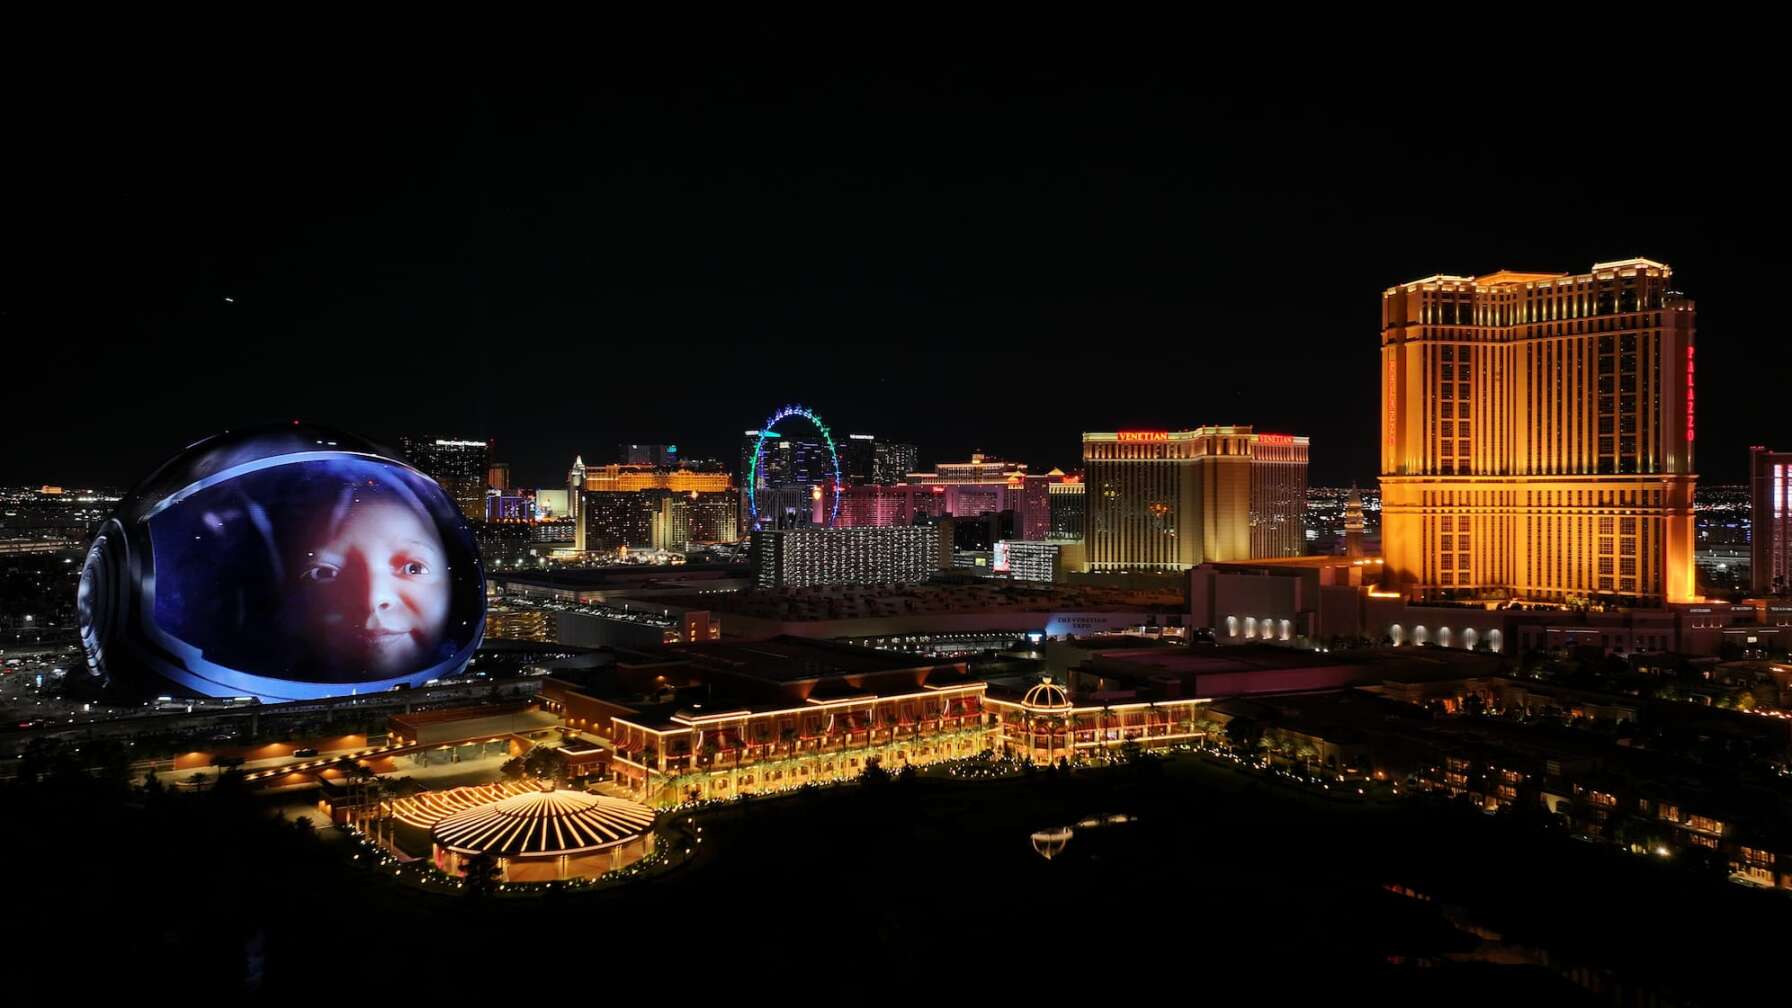 Foto des Konzerts von U2 live at The Sphere in Las Vegas, auf dem Bild zu sehen ist der Sphere von außen mit dem Bild eines Babys auf der LED Leinwand, daneben die Skyline von Las Vegas bei Nacht